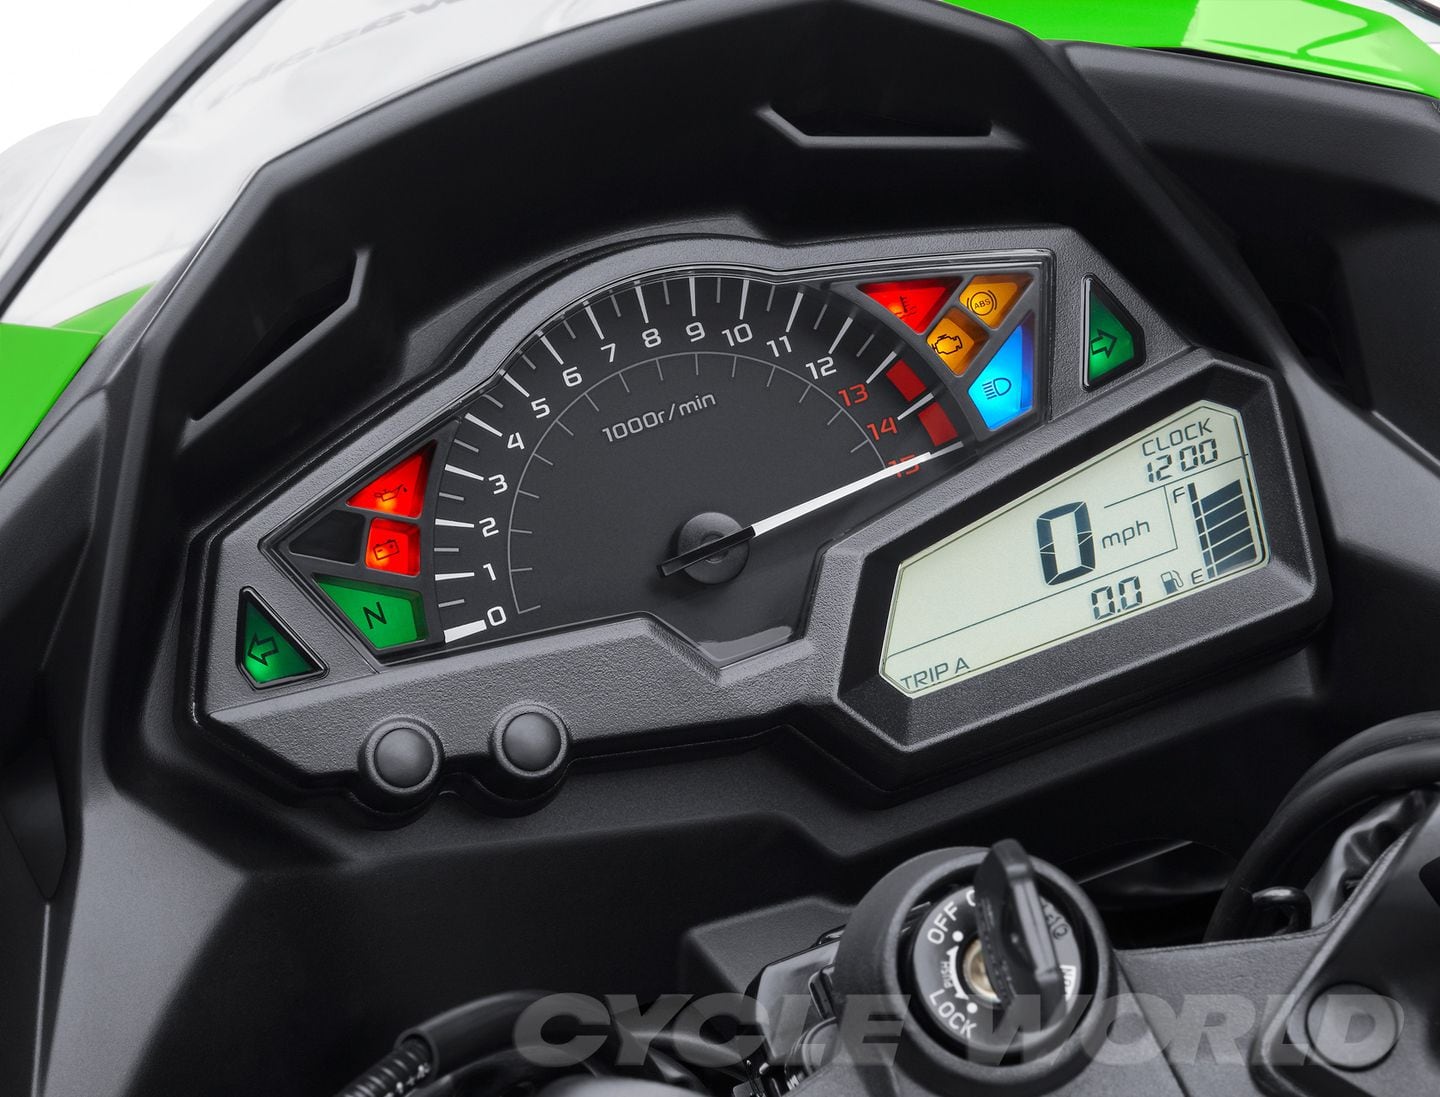 Kawasaki Ninja 300- First Look Review- Cycle